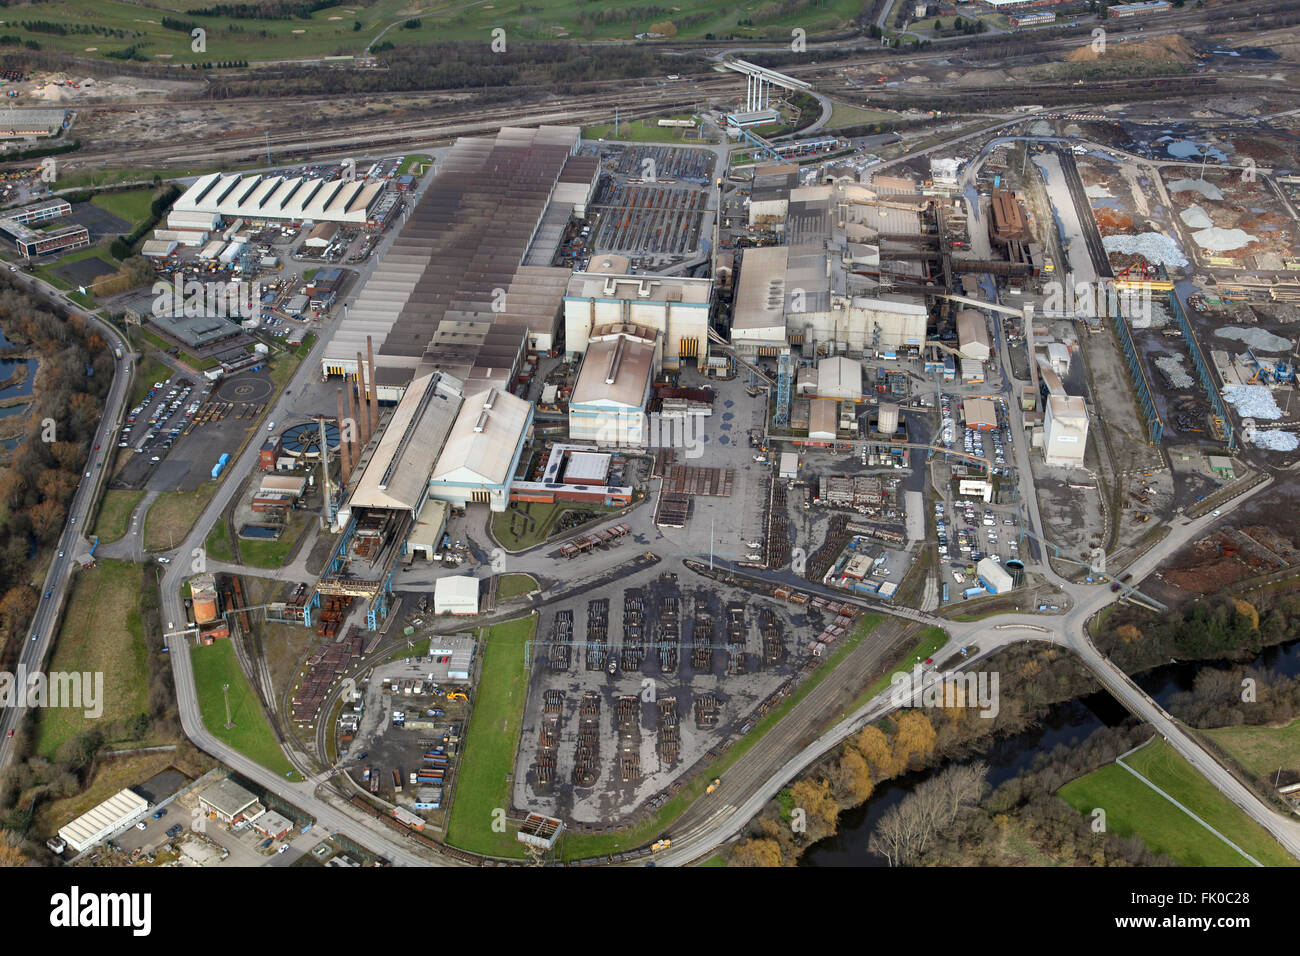 Vue aérienne de l'usine de sidérurgie Liberty Steel à Rawmarsh près de Rotherham, South Yorkshire, Royaume-Uni Banque D'Images